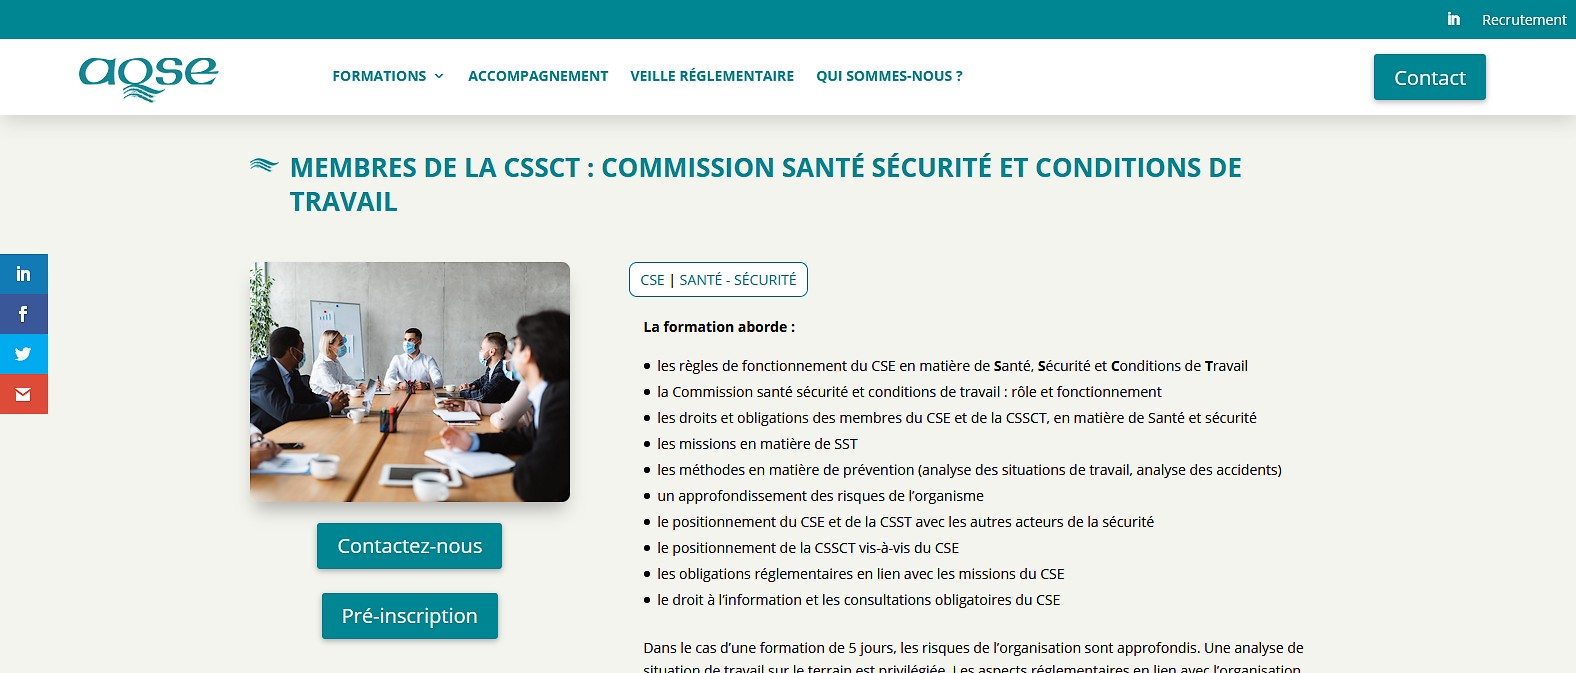 Formation CSSCT AQSE-France.fr la formation des membres de la CSSCT la Commission SSCT du CSE